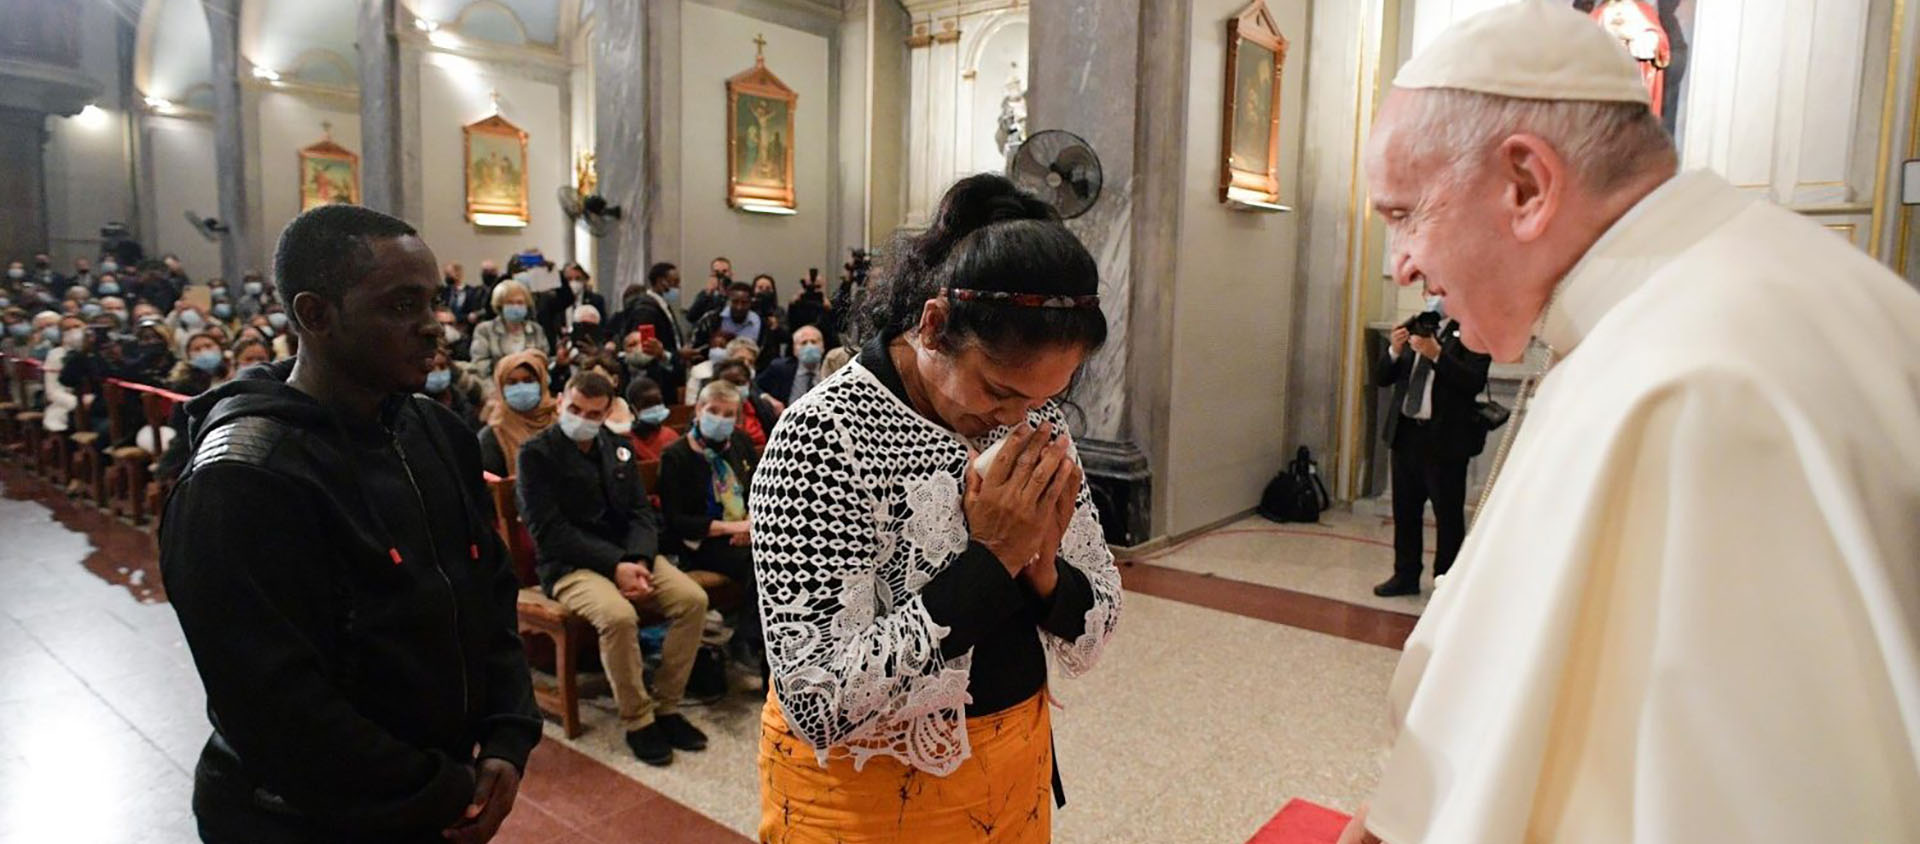 Le Saint-Siège a confirmé l'accueil d'une douzaine de réfugiés en Italie. Le pape en a rencontré certains lors de la prière œcuménique à Nicosie | © Vatican Media